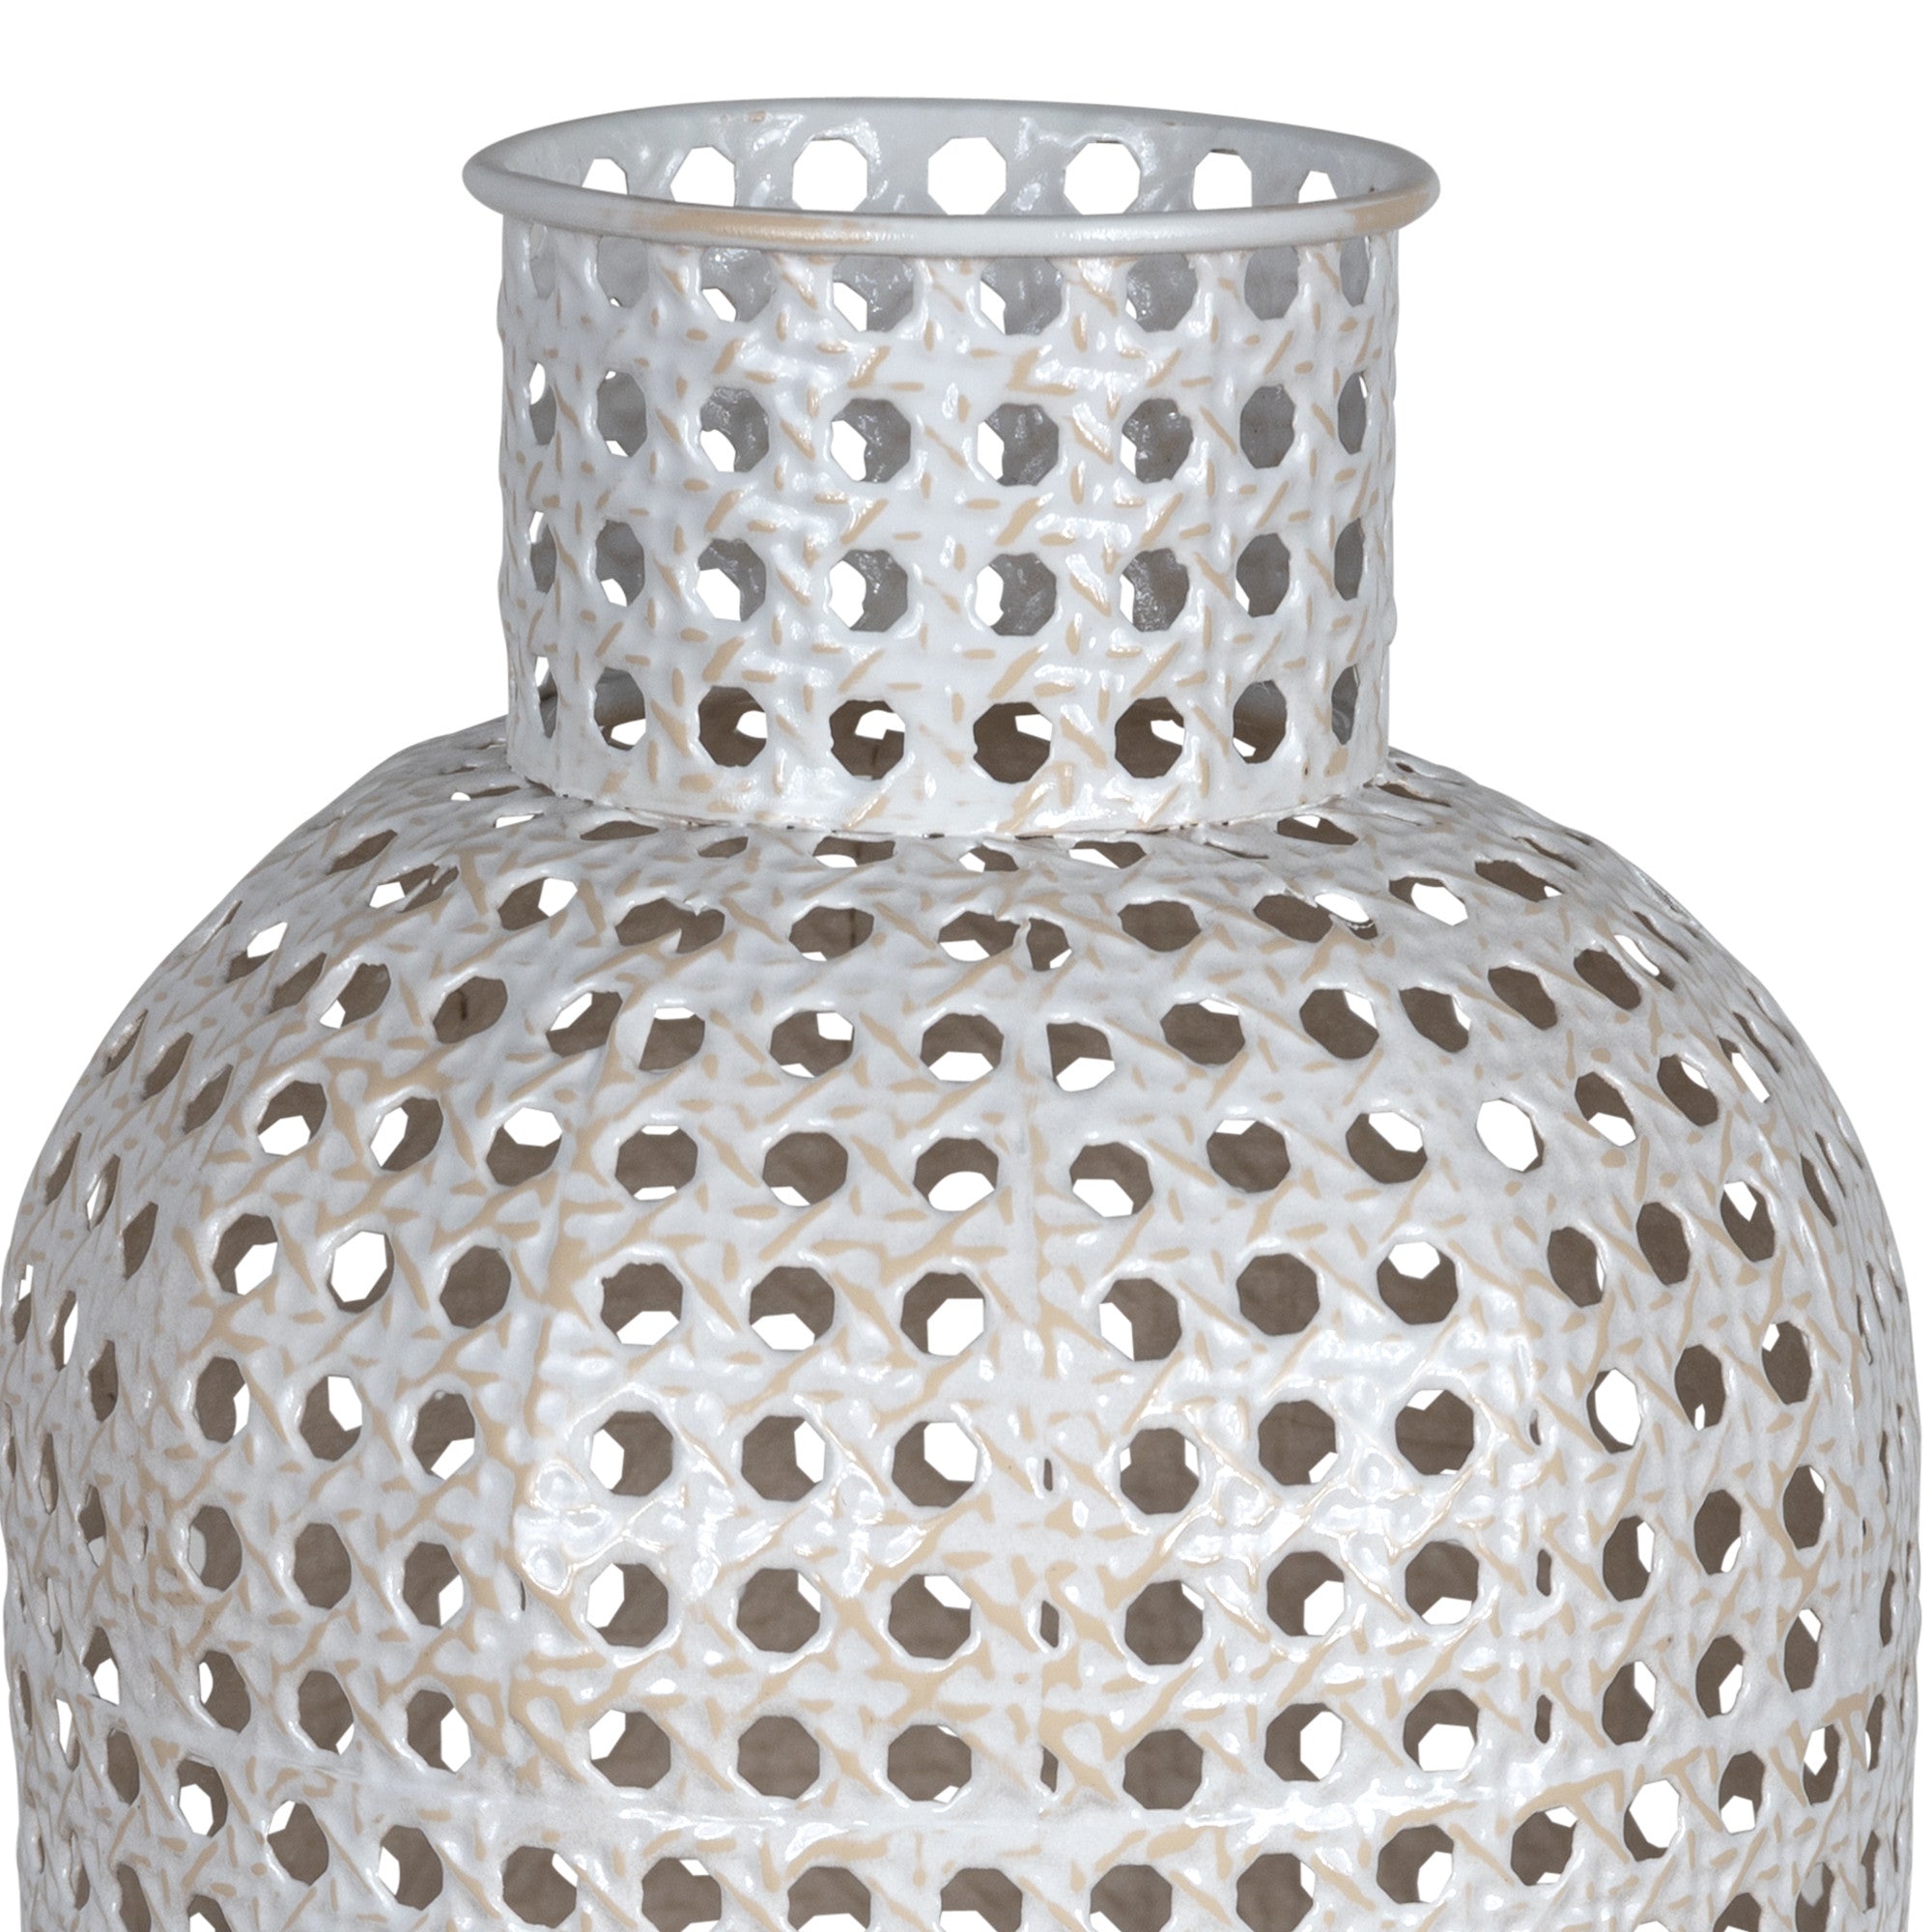 Medium Metal Cane Design Vase Decor